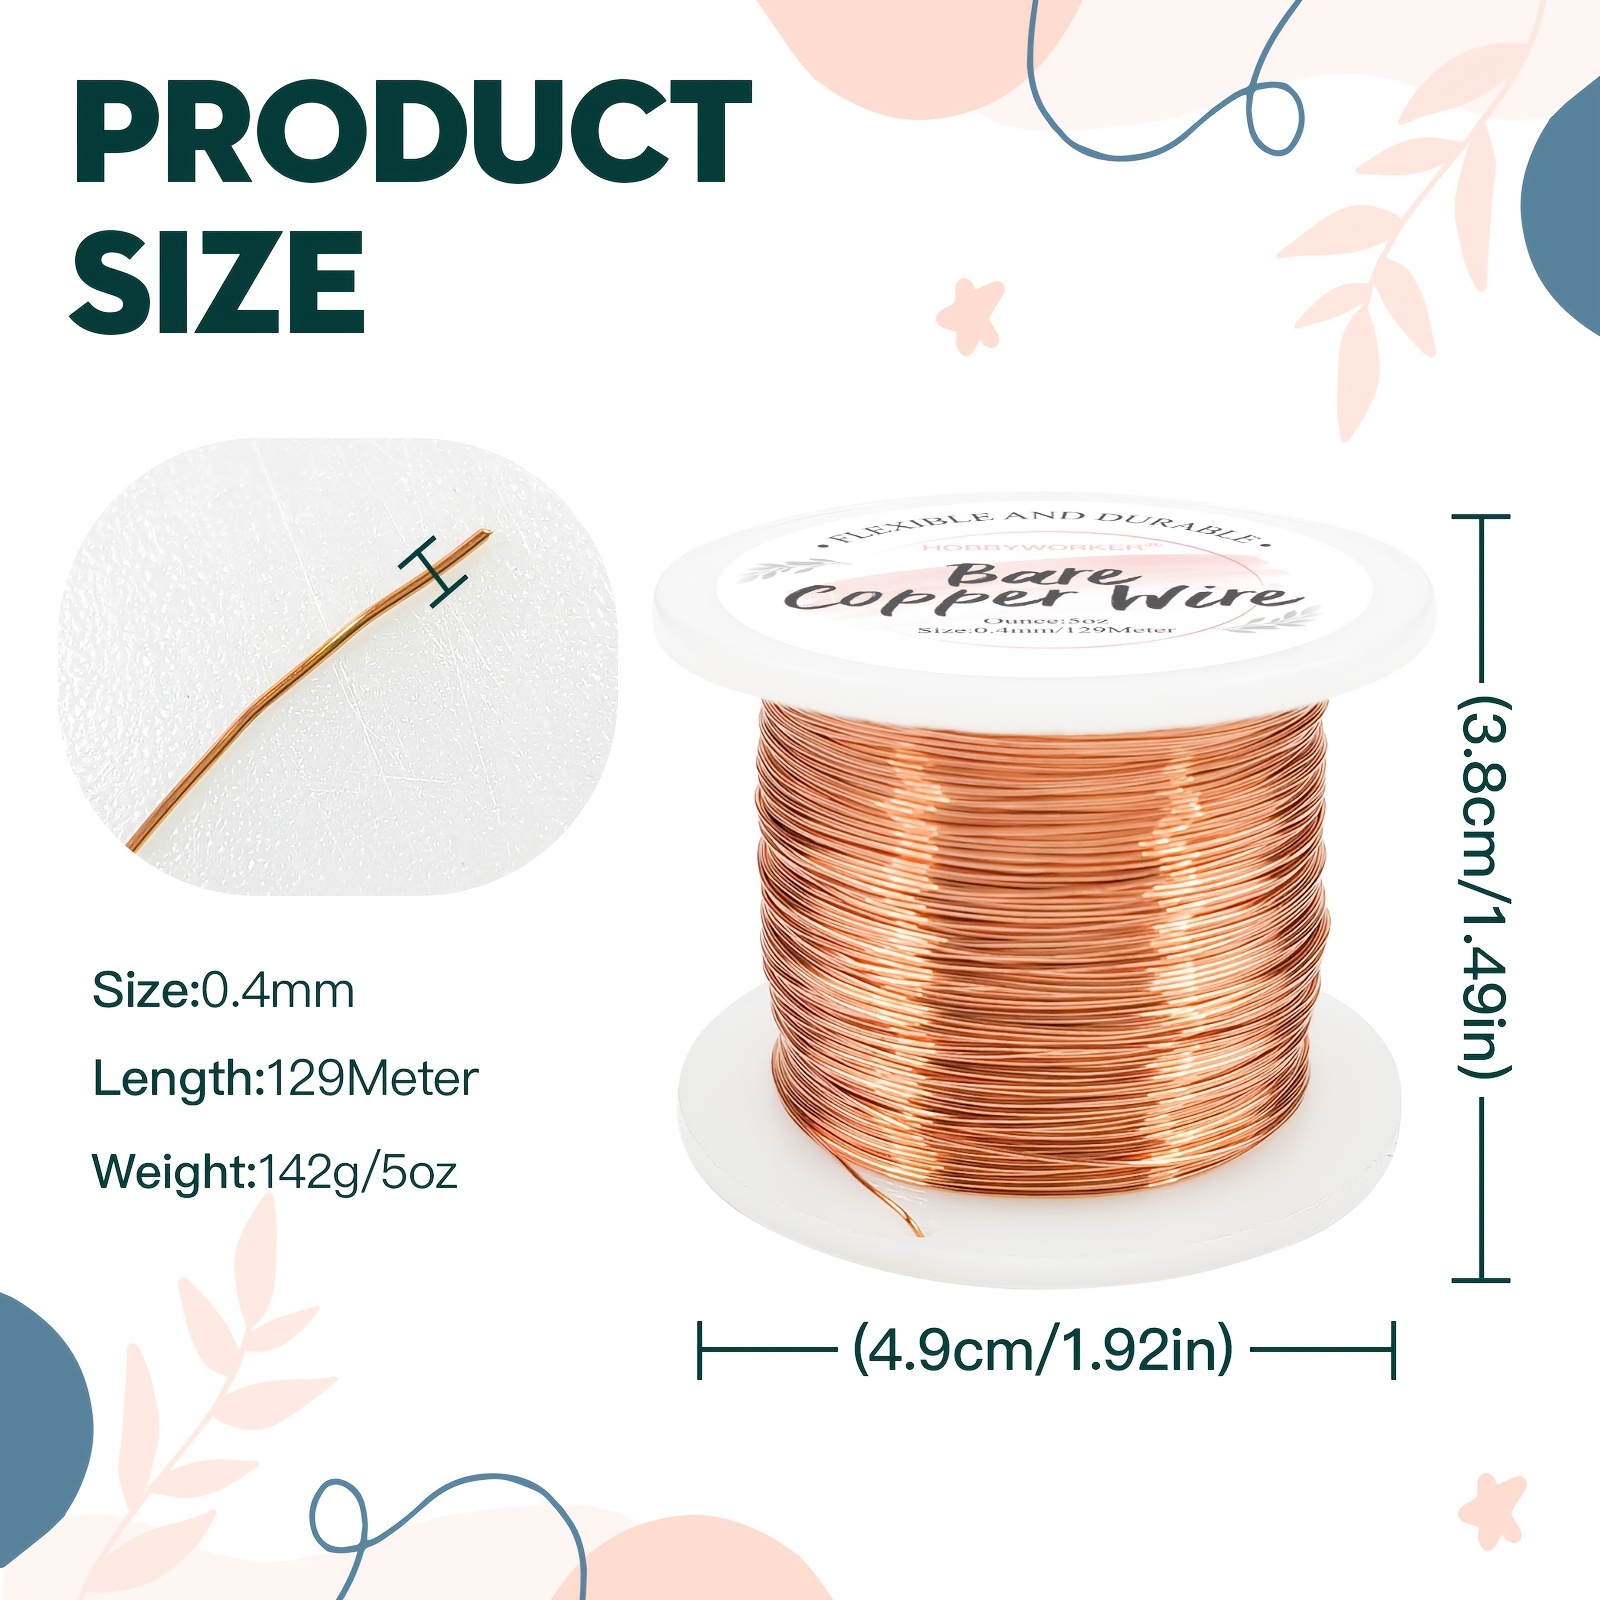 Copper Wire, 20 gauge